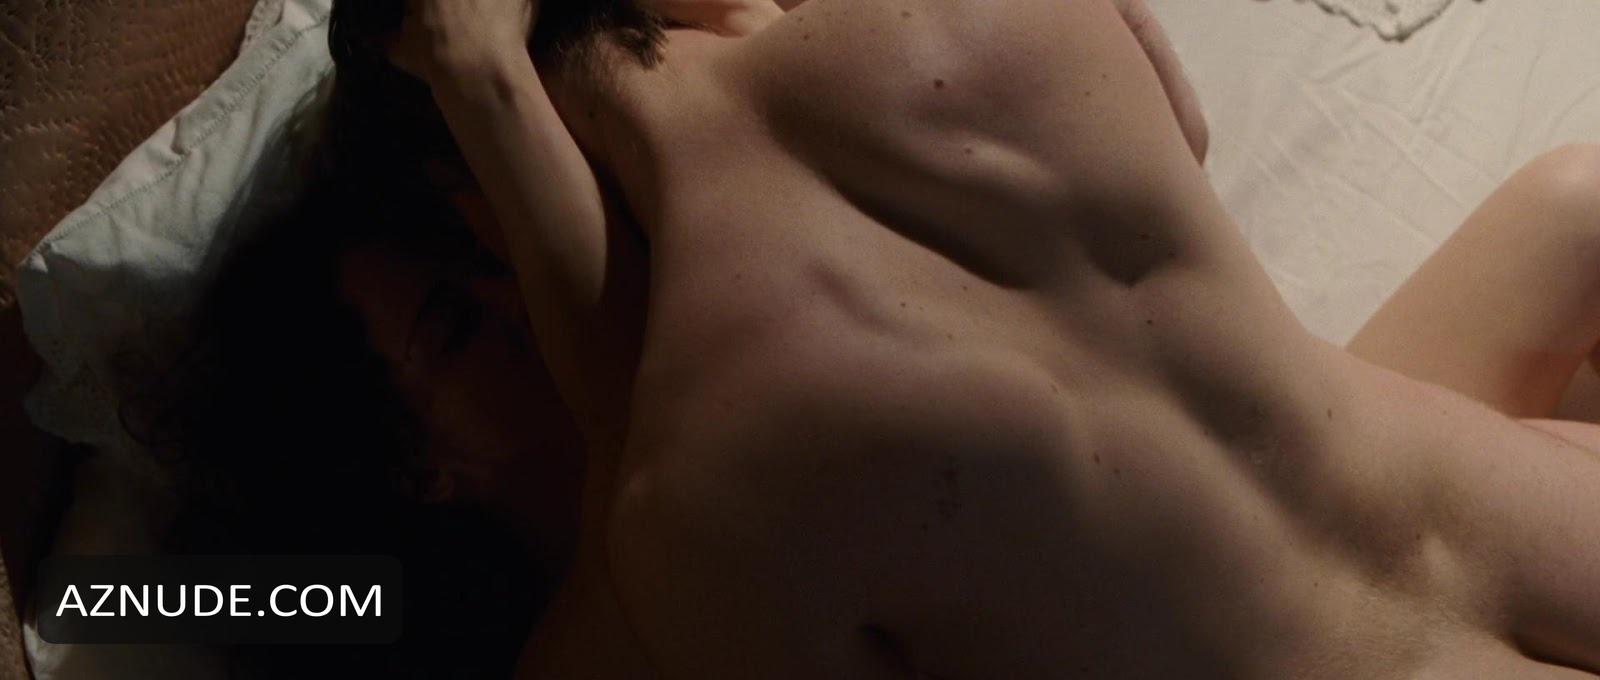 Robert Pattinson Nude